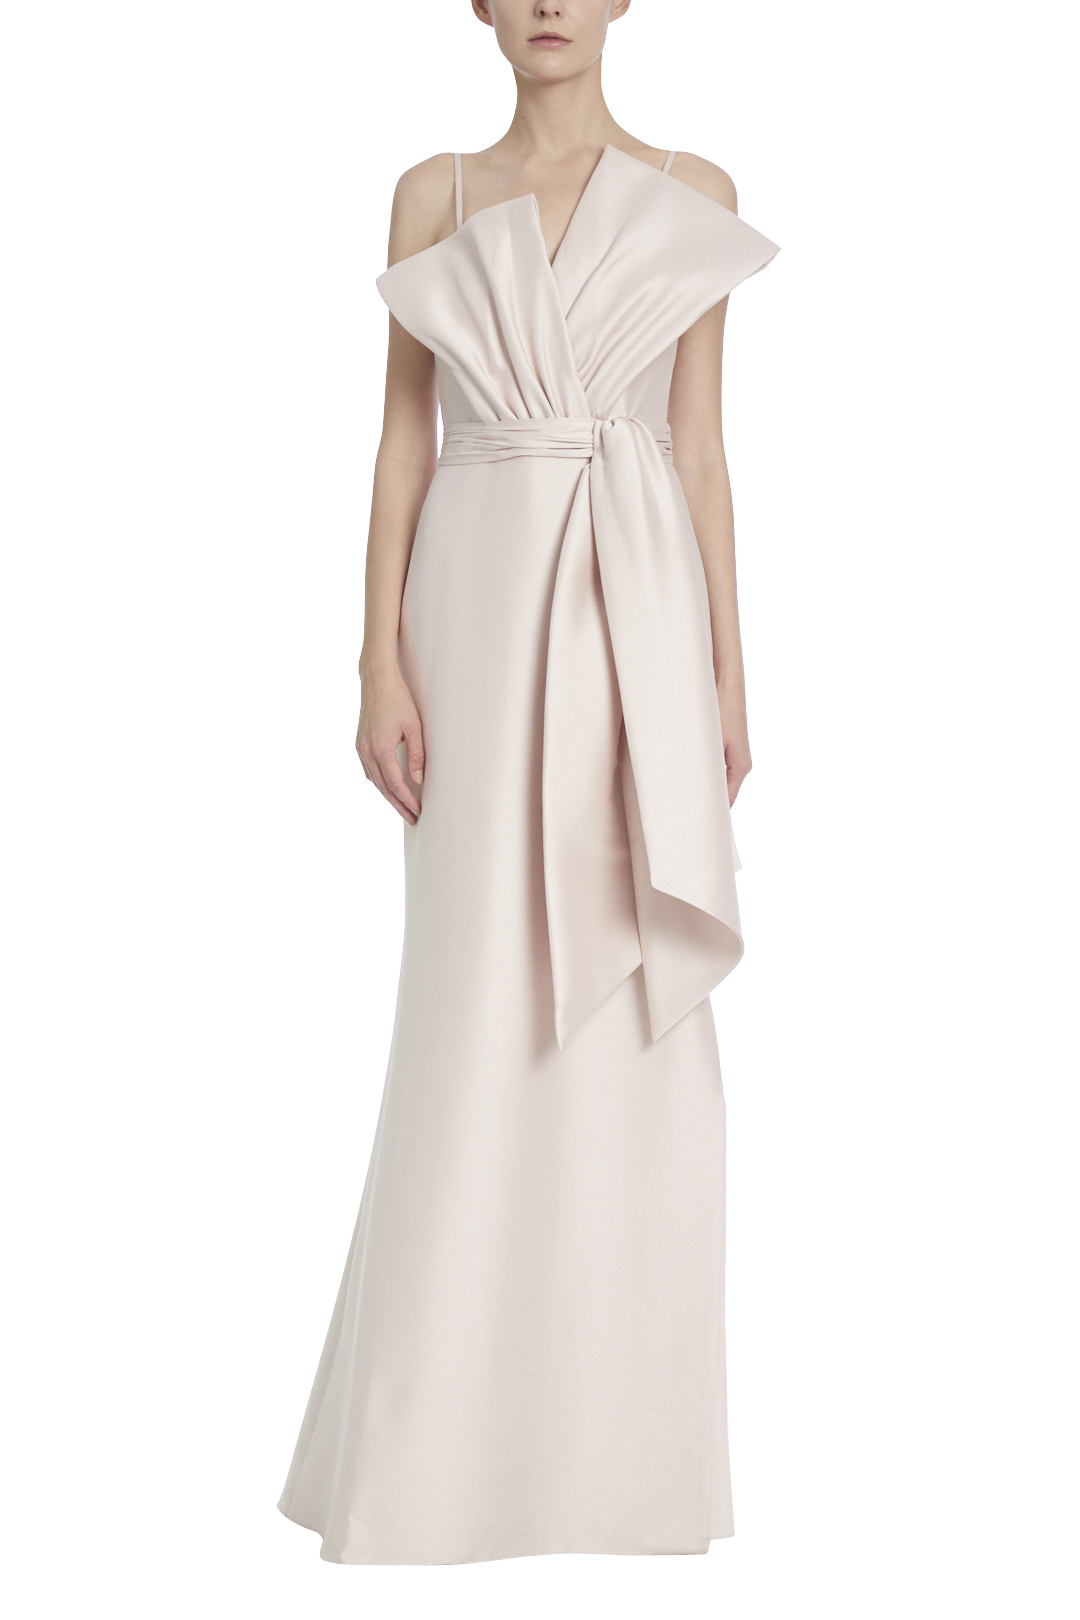 Belle Badgley Mischka Sleeveless Women's Formal Dresses & Evening Gowns |  Dillard's